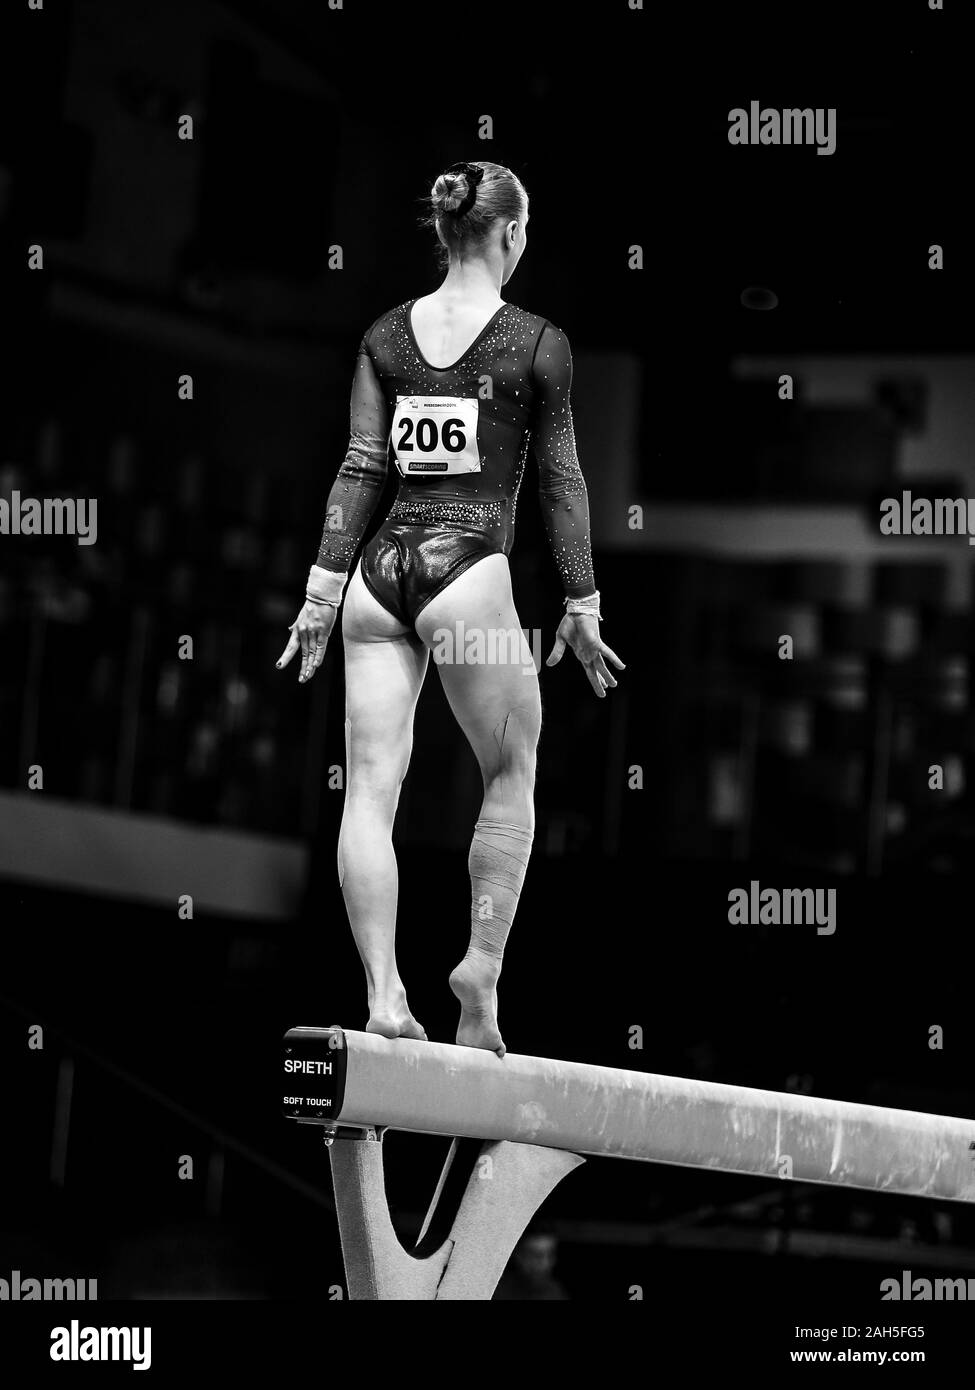 Szczecin, Polonia, 11 Aprile 2019: Valeriia Osipova dell'Ucraina compete sul fascio di equilibrio durante l'Europeo di ginnastica artistica campionati Foto Stock